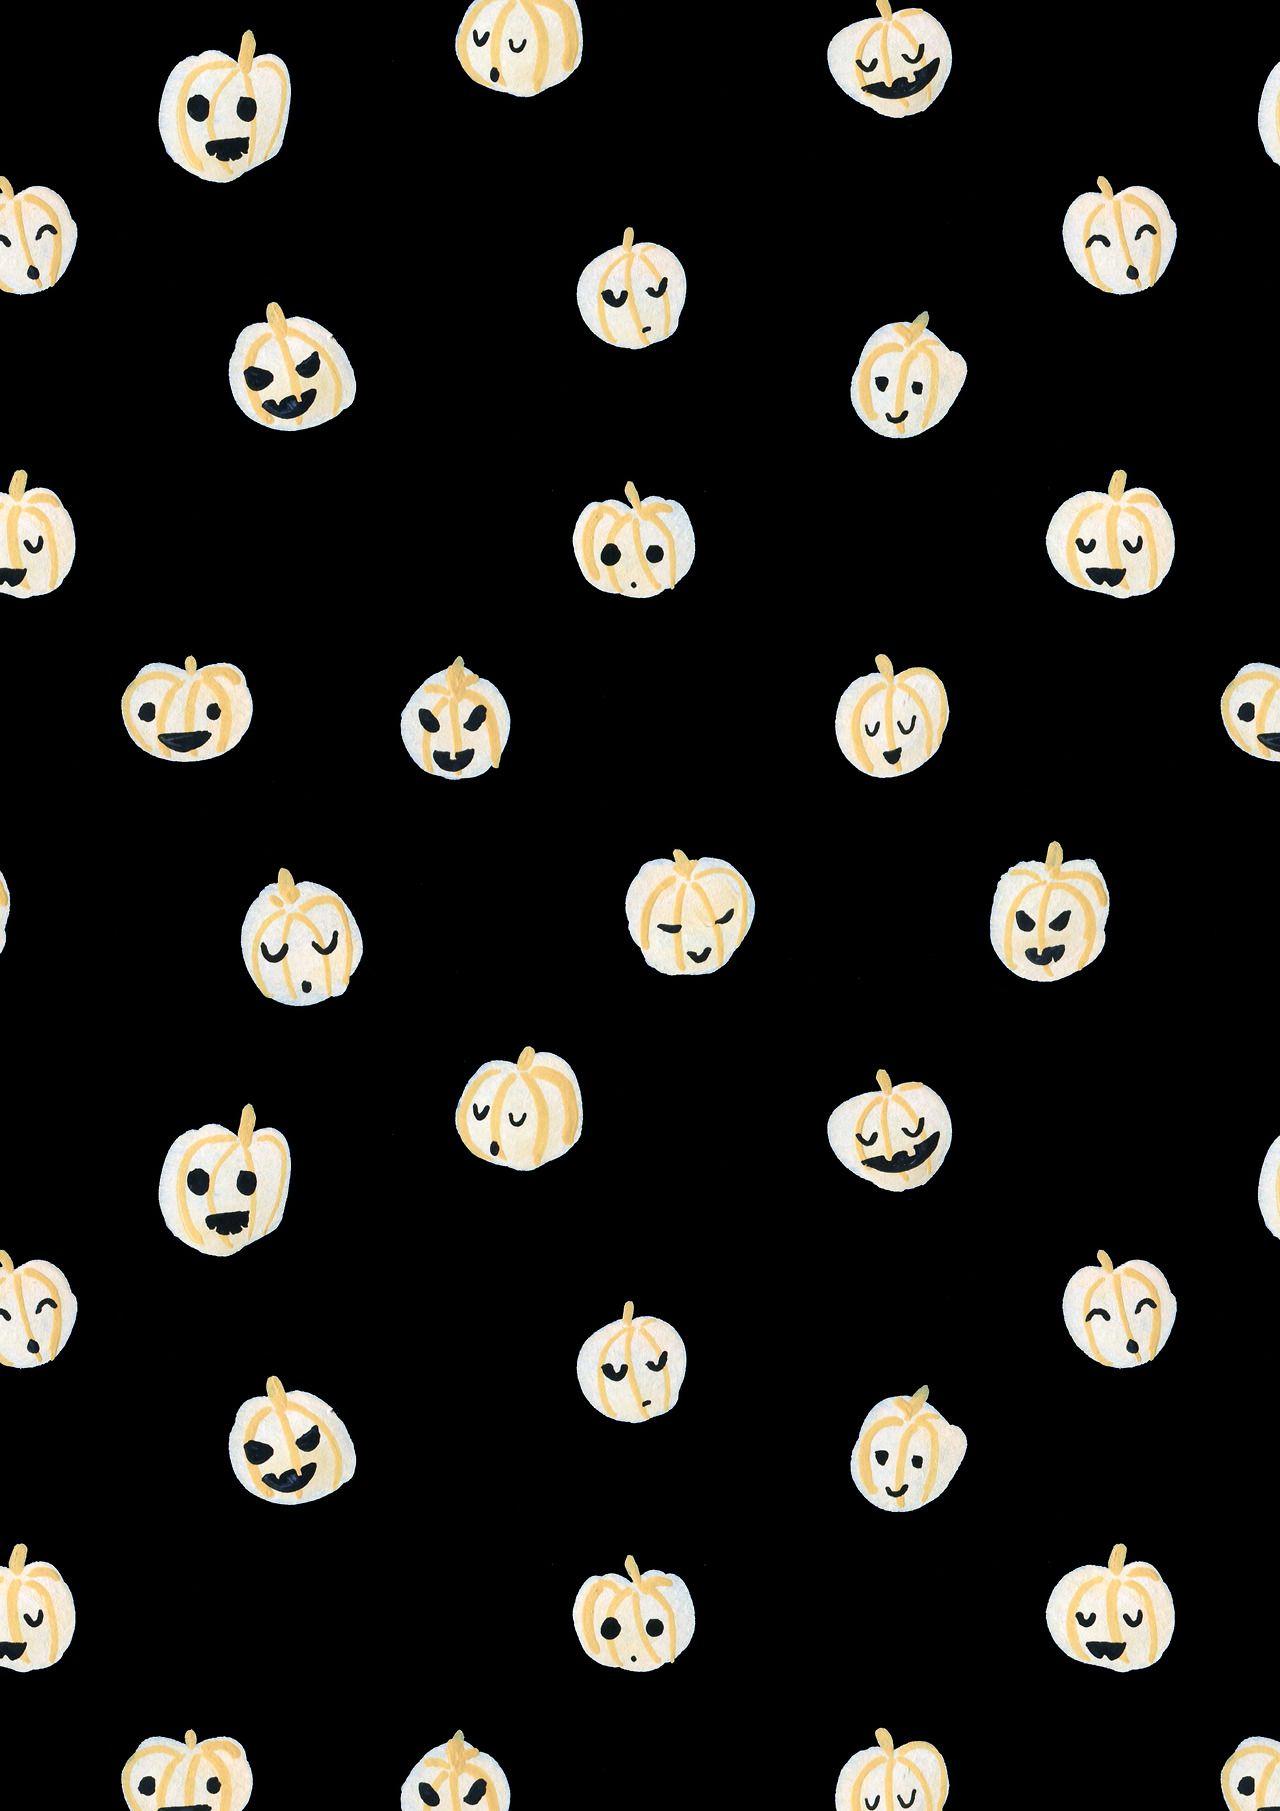 Autumn / Fall / Halloween cute pumpkin pattern design. all